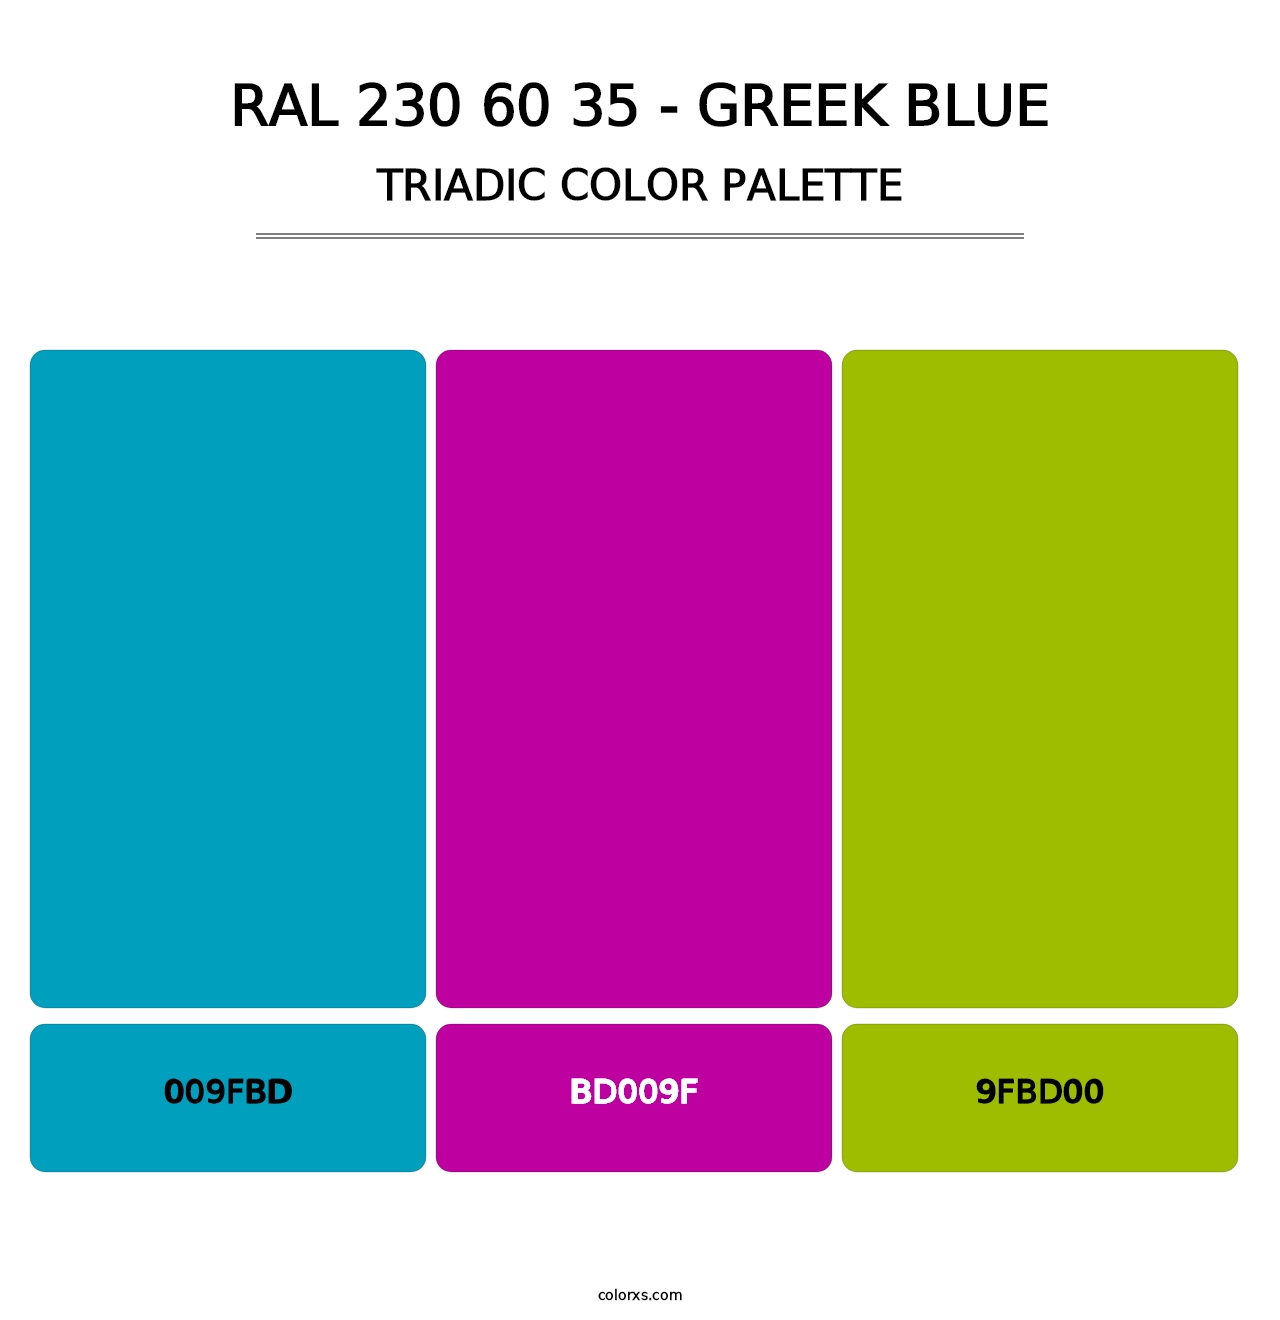 RAL 230 60 35 - Greek Blue - Triadic Color Palette